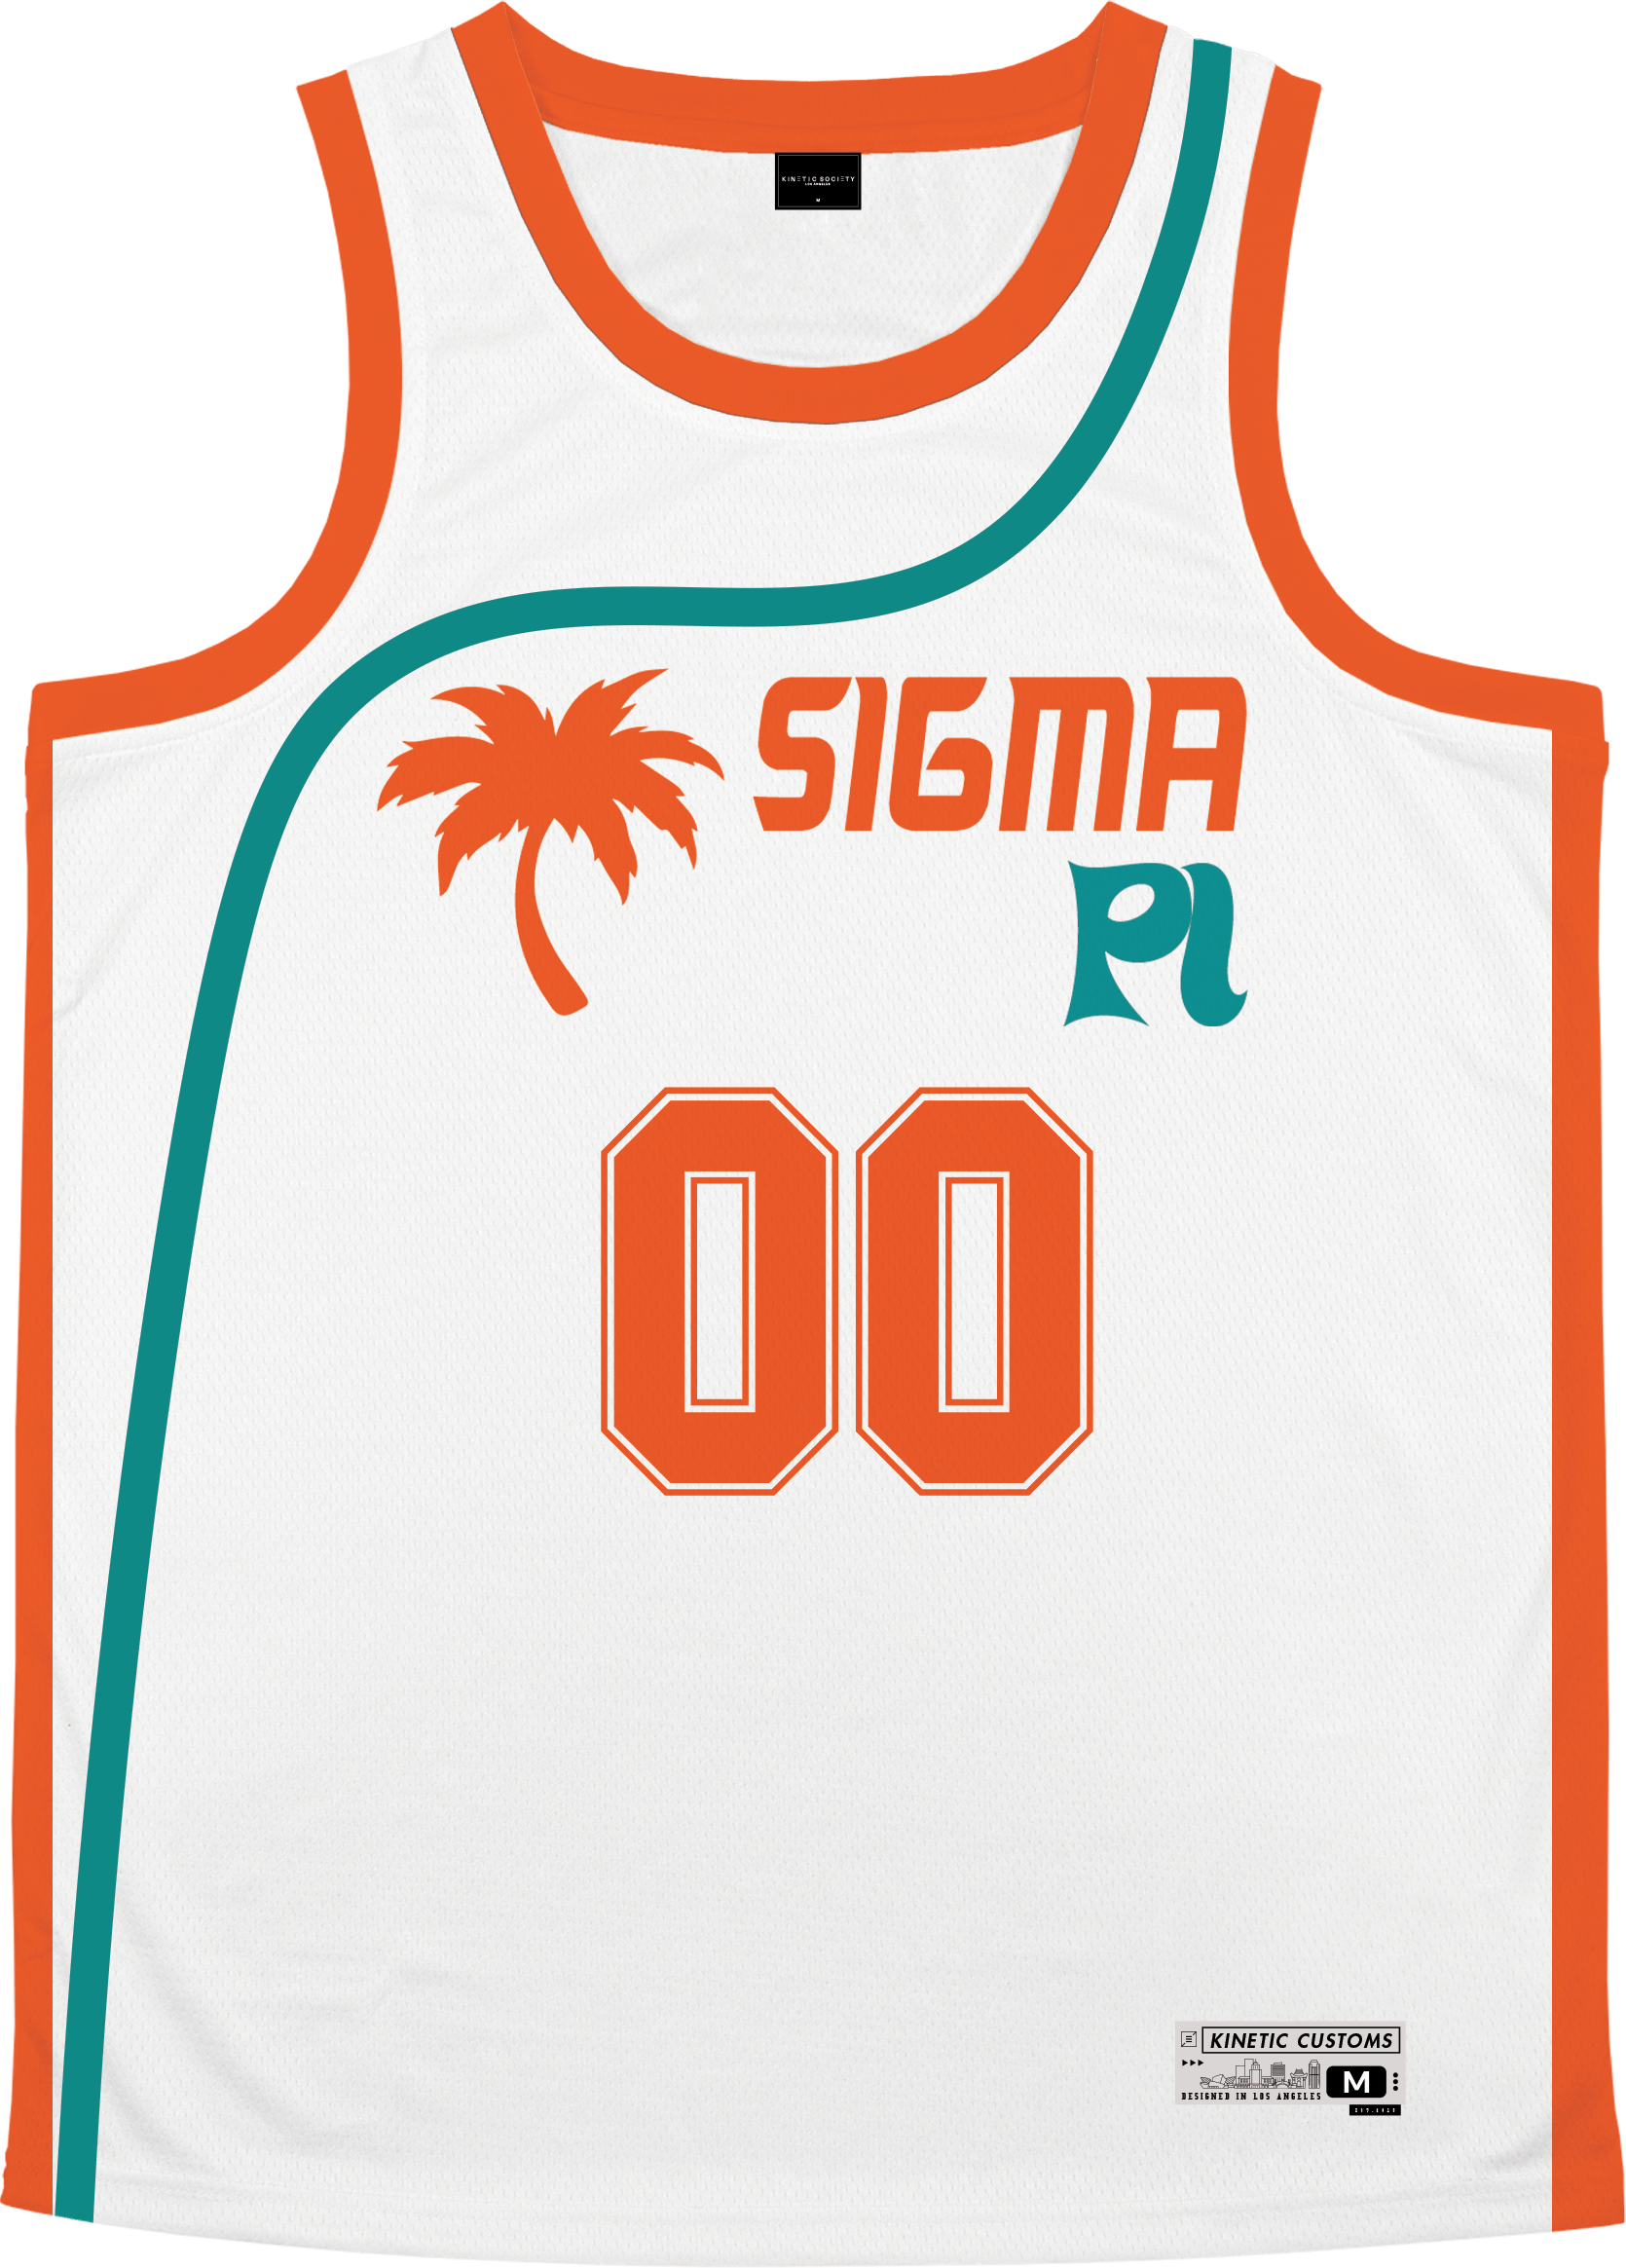 Sigma Pi - Tropical Basketball Jersey Premium Basketball Kinetic Society LLC 